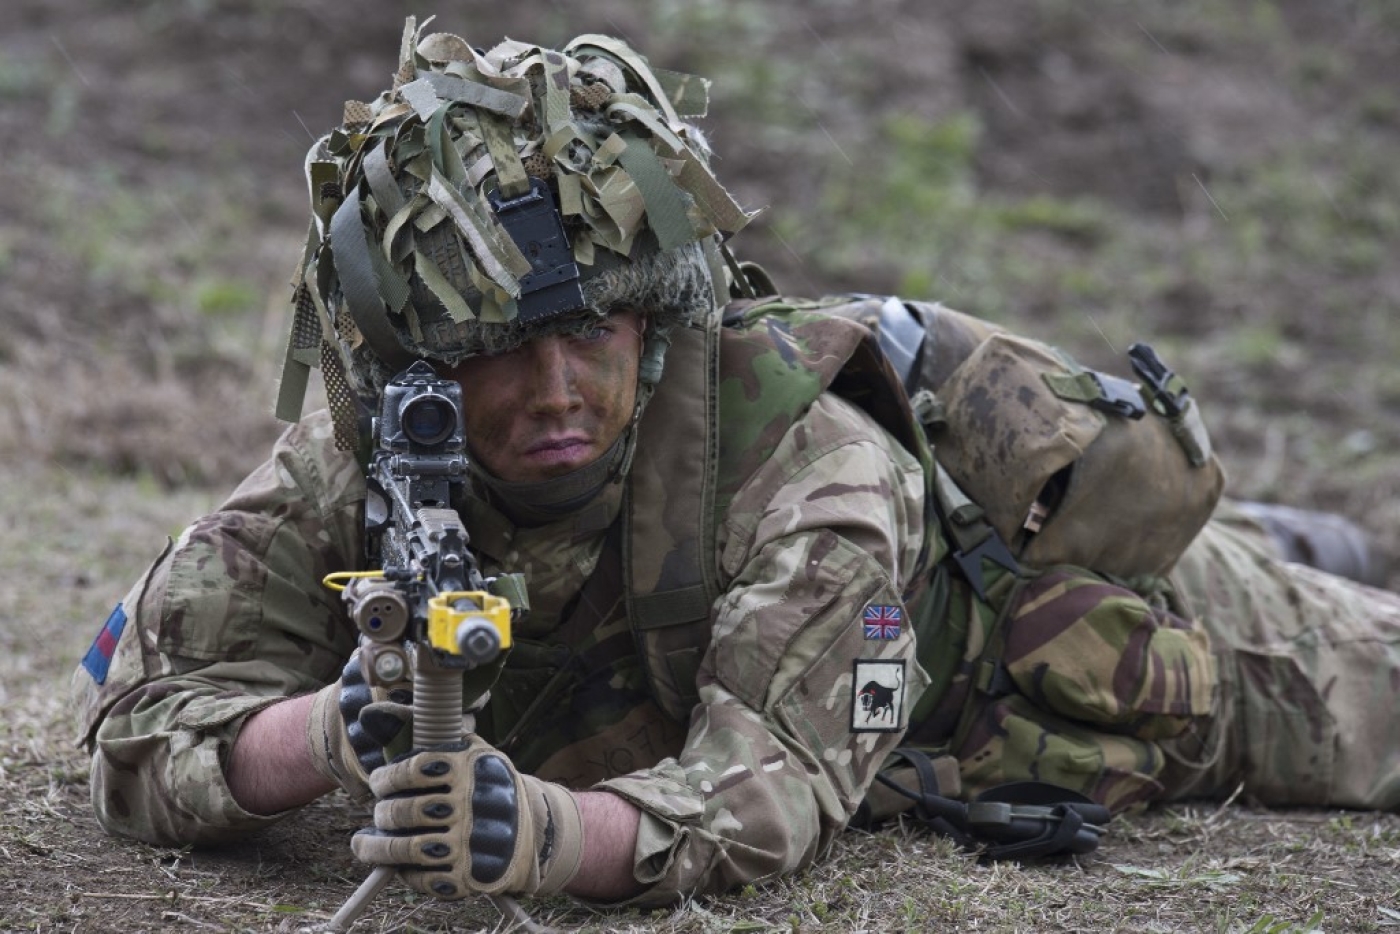 Un soldat de l’OTAN pendant un exercice militaire en Roumanie, le 21 avril 2015 (AFP/Daniel Mihailescu)